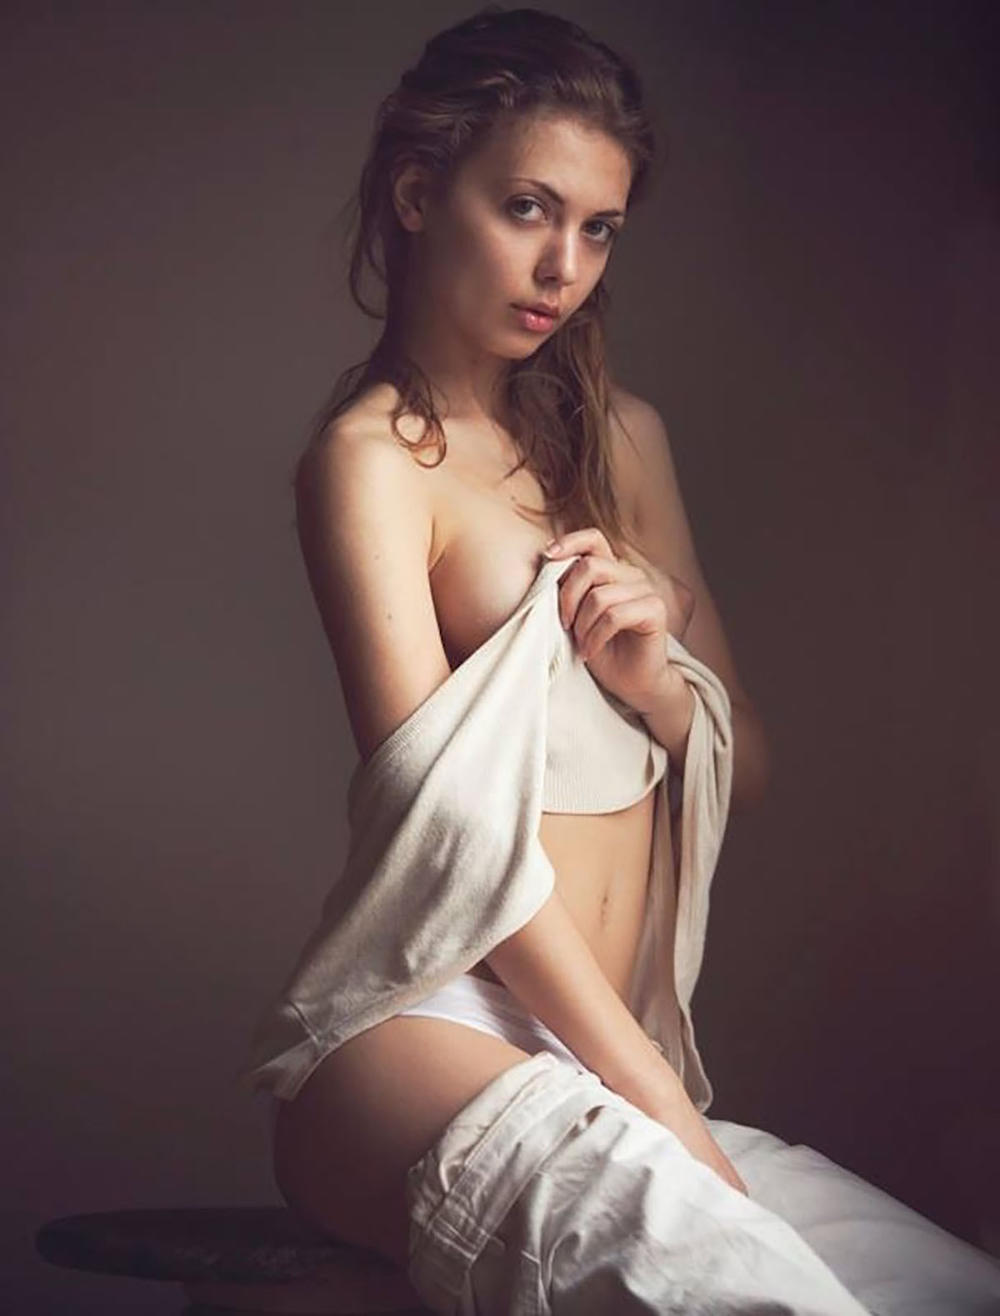 Η Γαλλίδα μουνάρα μοντέλο Klaudia Brahja σε γυμνή καυτή φωτογράφηση